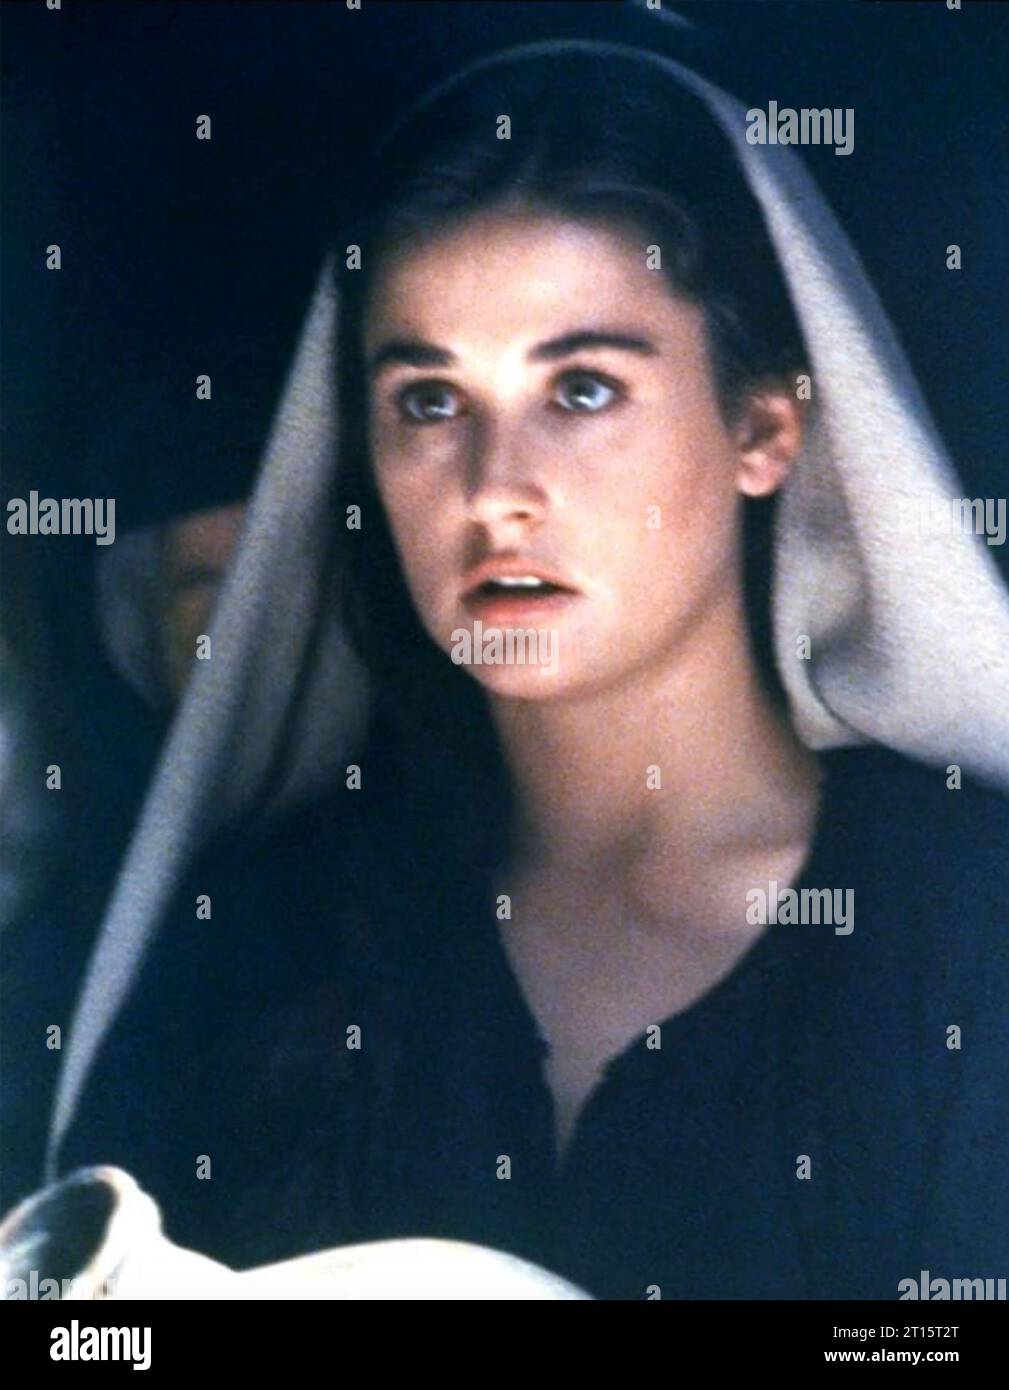 IL SETTIMO SEGNO 1988 TriStar Pictures film con Demi Moore Foto Stock